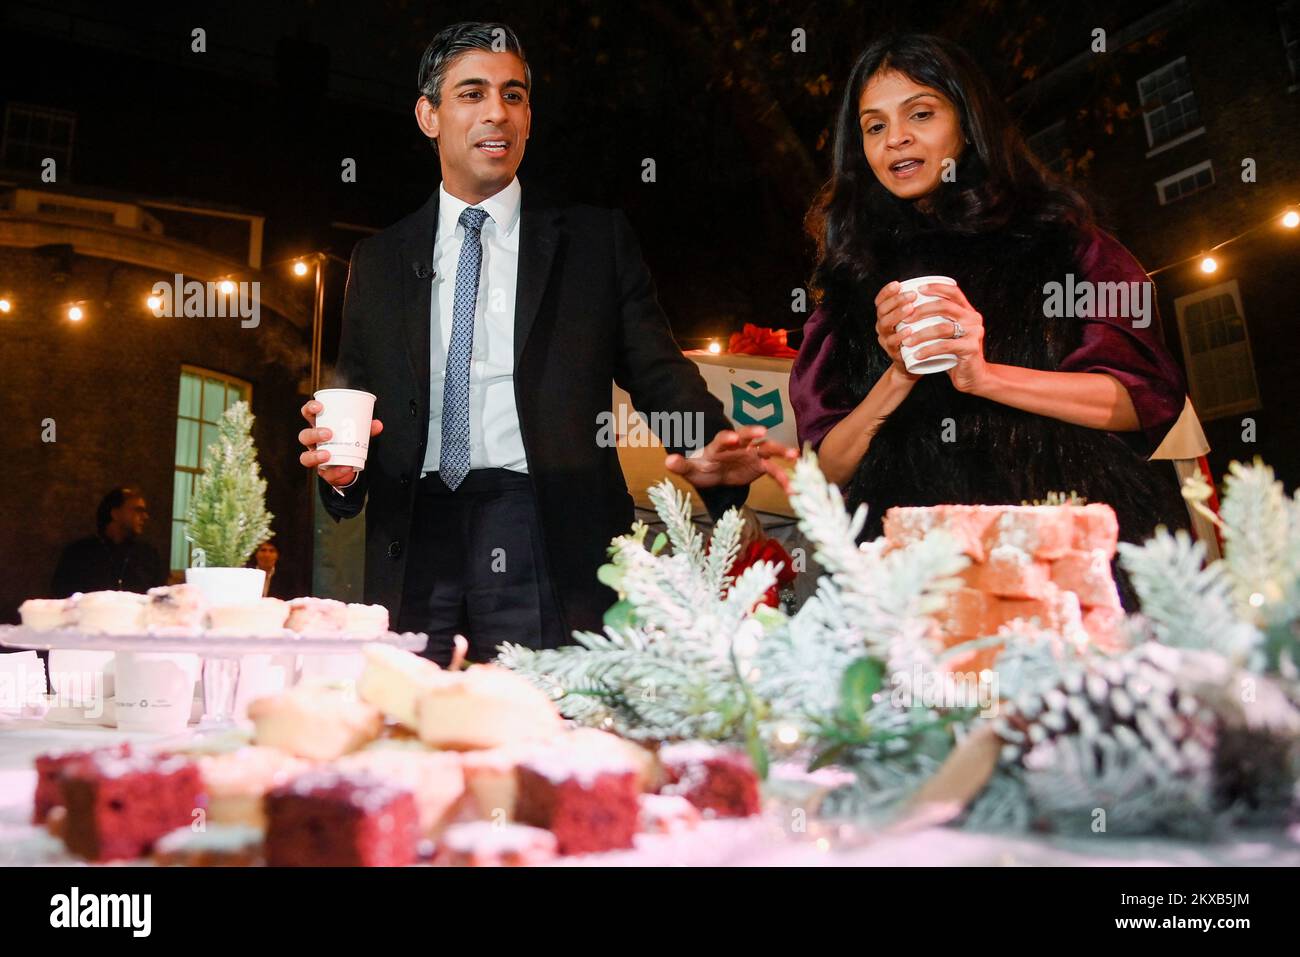 El Primer Ministro Rishi Sunak y su esposa Akshata Murty visitan un mercado de alimentos y bebidas mientras Sunak celebra un escaparate festivo en Downing Street, Londres, en forma de mercado callejero para defender a las empresas de todo el Reino Unido antes del sábado de la pequeña empresa. Fecha de la foto: Miércoles 30 de noviembre de 2022. Foto de stock